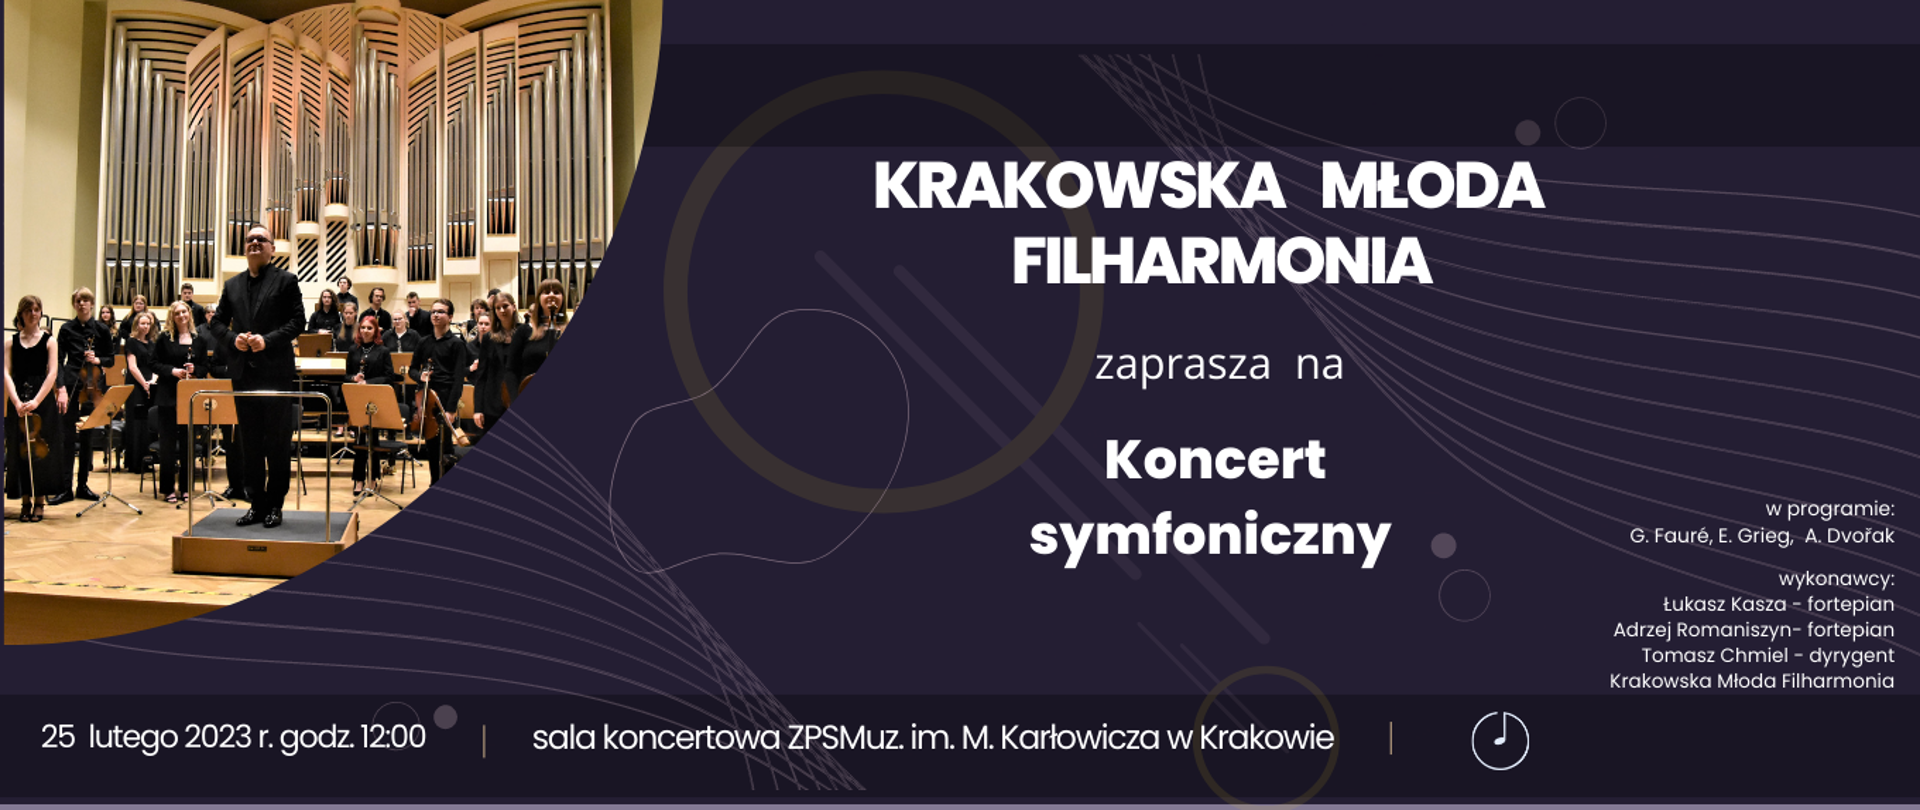 Jest to plakat zapowiadający koncert symfoniczny w wykonaniu orkiestry szkolnej w dniu 25.02.2023 roku o g. 12 , który odbedzie się w sali koncertowej szkoły.solistami są uczniowie szkoły - pianiści,
program:
Faure - pavana
Grieg - koncert fortepianowy
Dvorak - 9 Symfonia